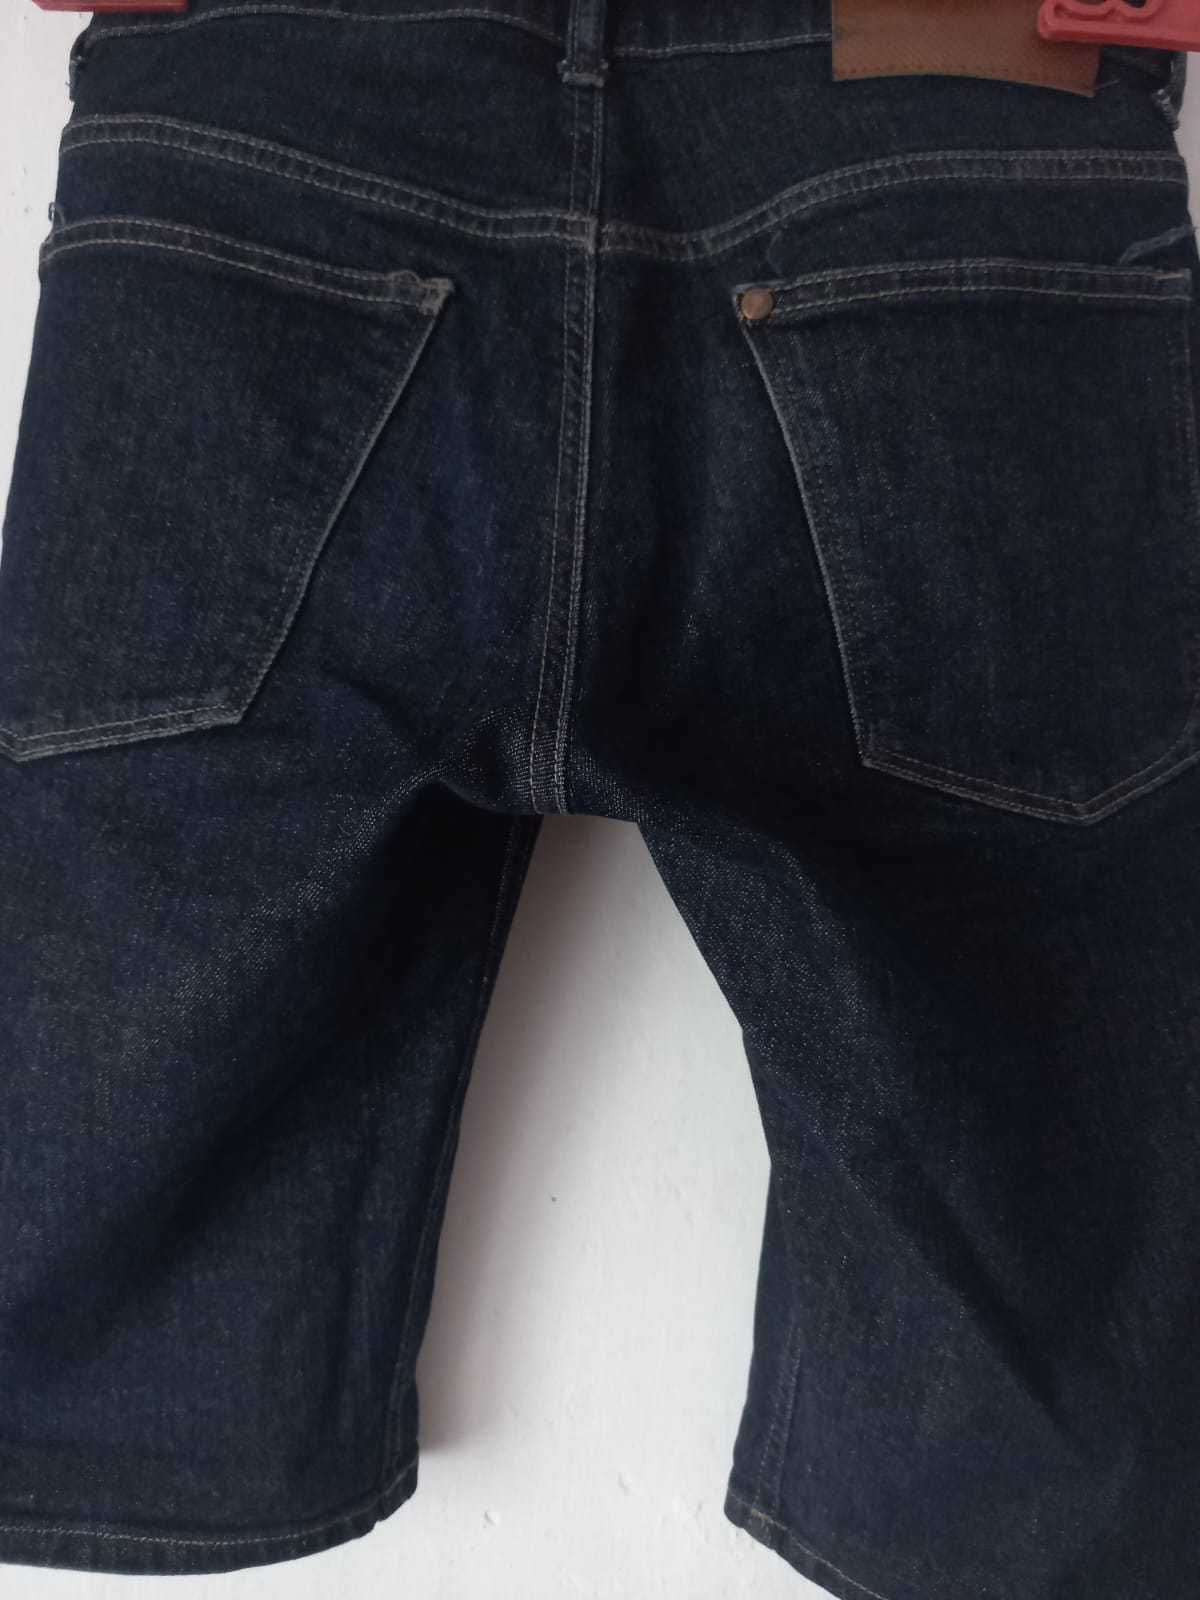 Шорты мужские черные джинсовые DENIM  31  CN 175/86A, цена  1000 тенге